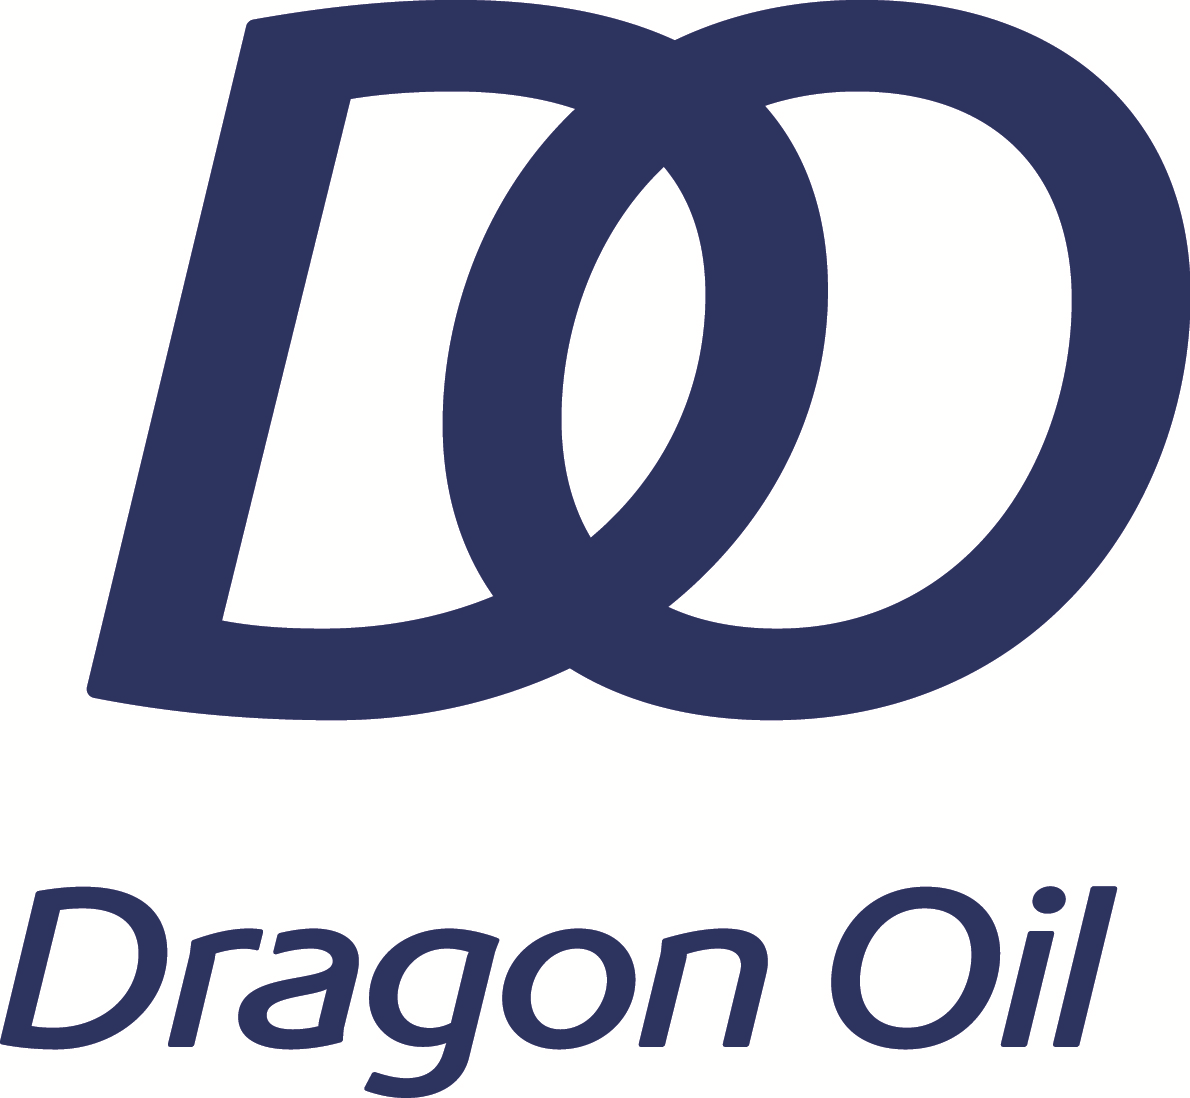 Dragon-Oil-Enoc-logo